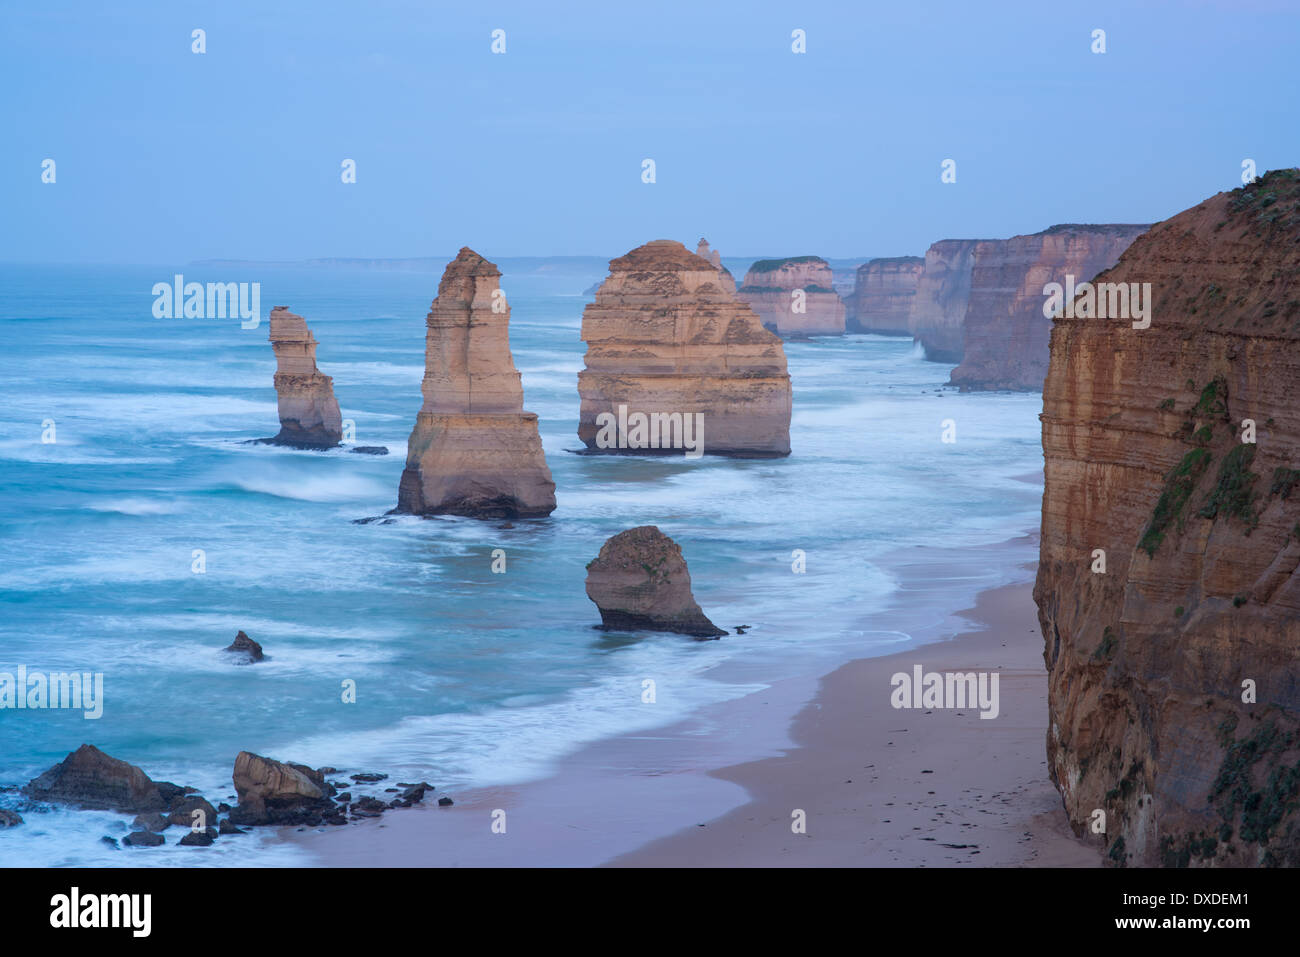 Il s'agit d'une image des 12 apôtres caractéristique géologique dans le sud de l'Australie. Banque D'Images